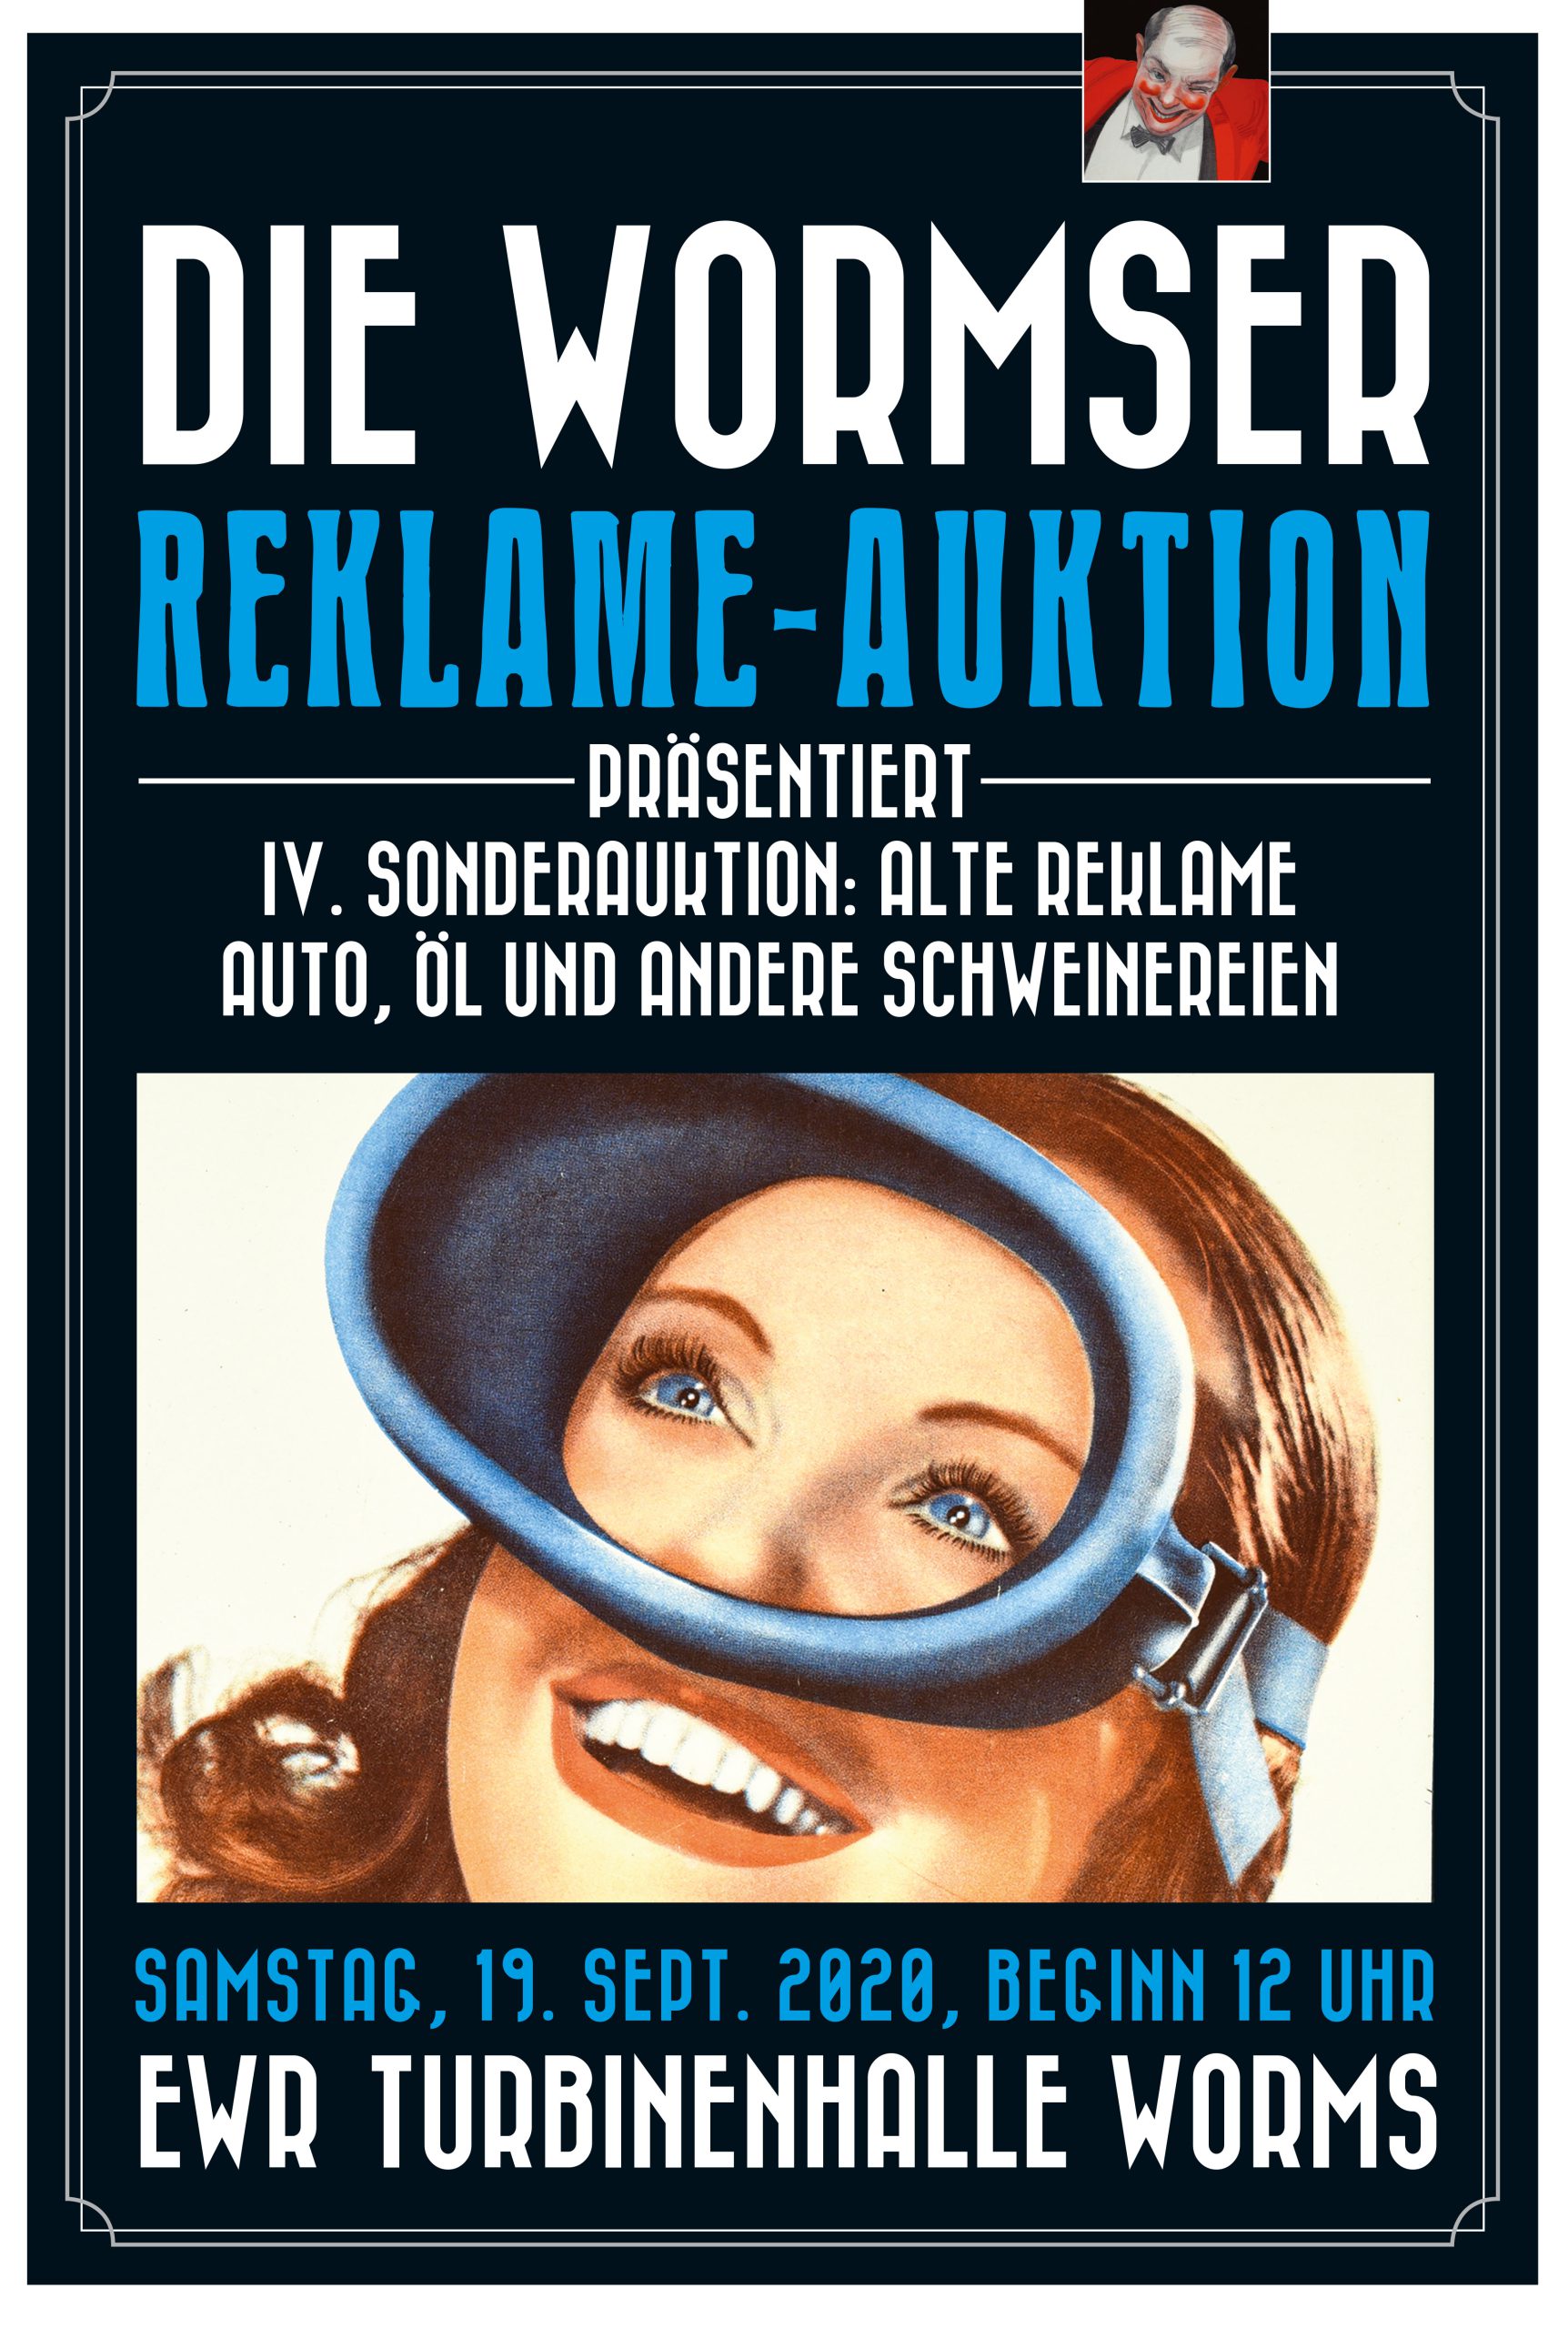 20 Wormser Reklame Auktion 24.03.18 